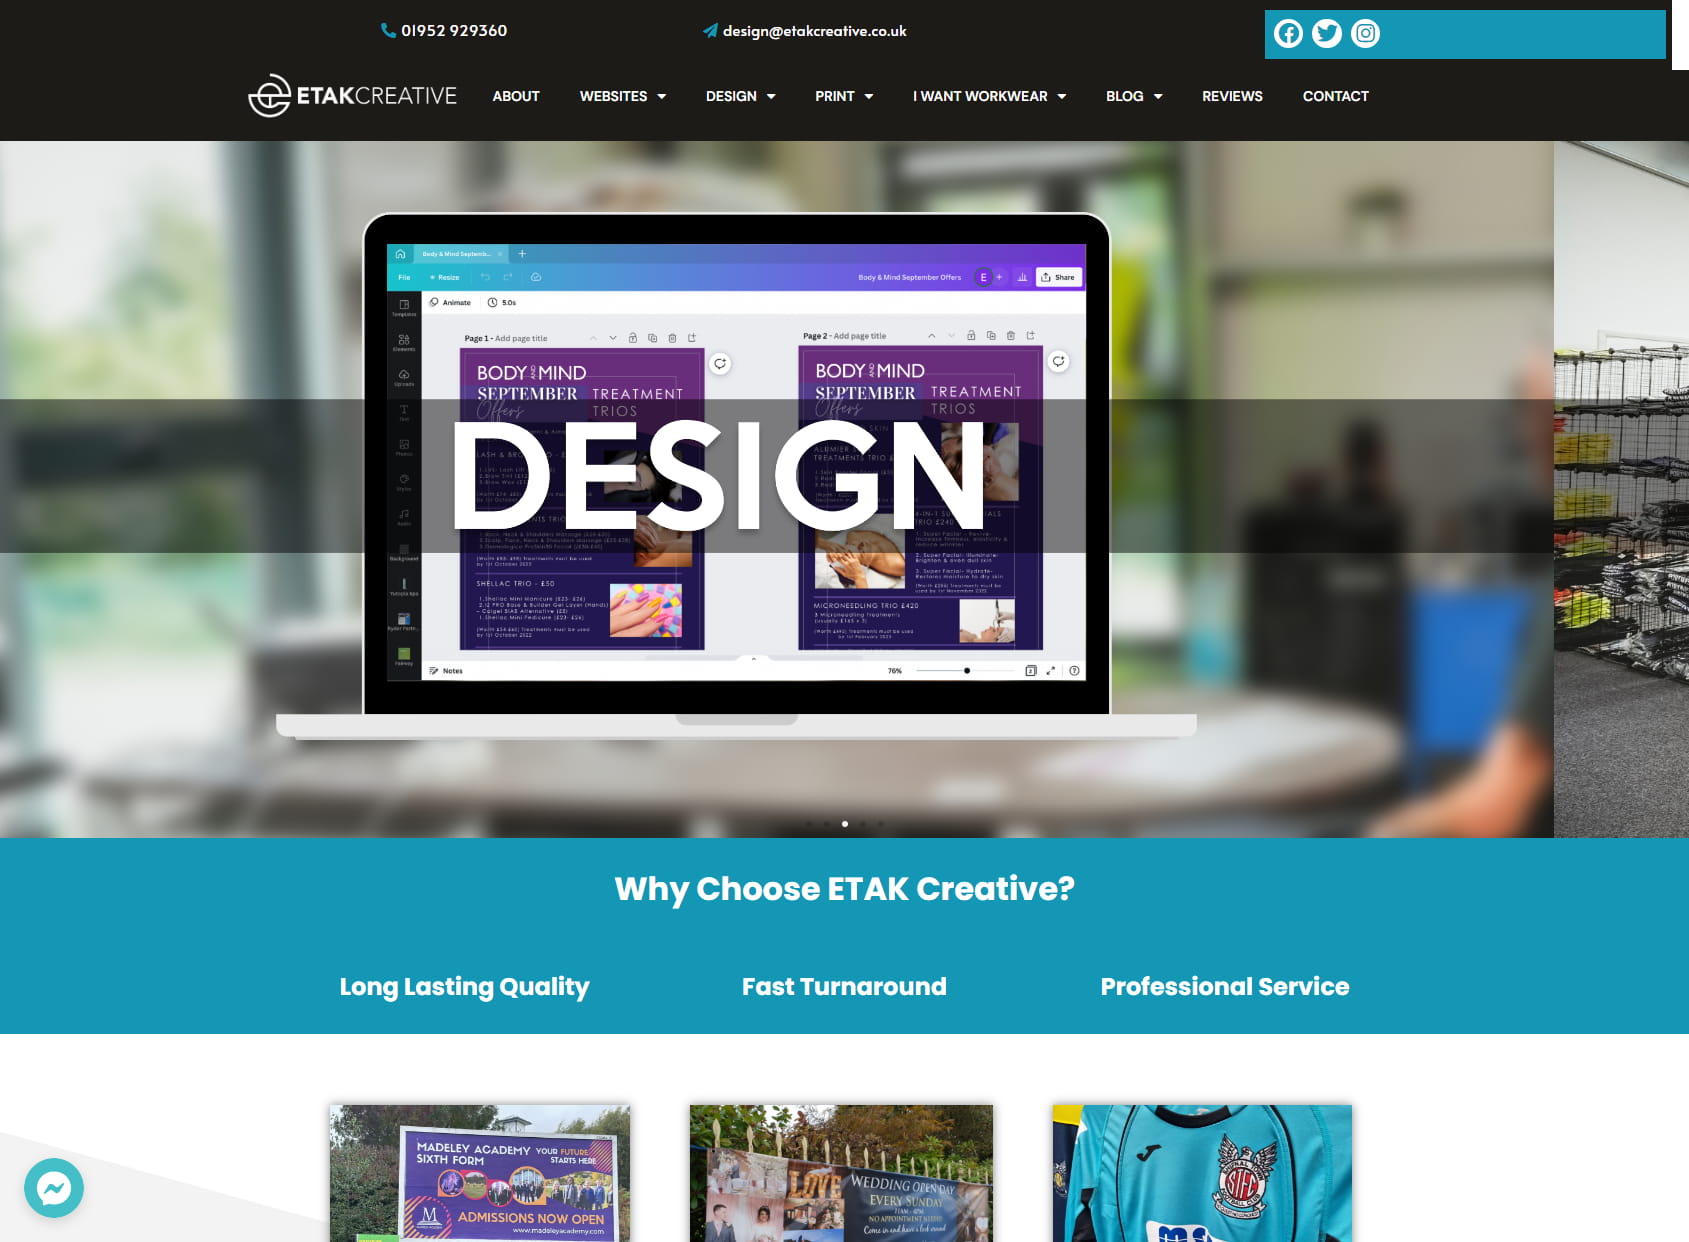 ETAK Creative Ltd - I Want WEB - DESIGN - PRINT - WORKWEAR